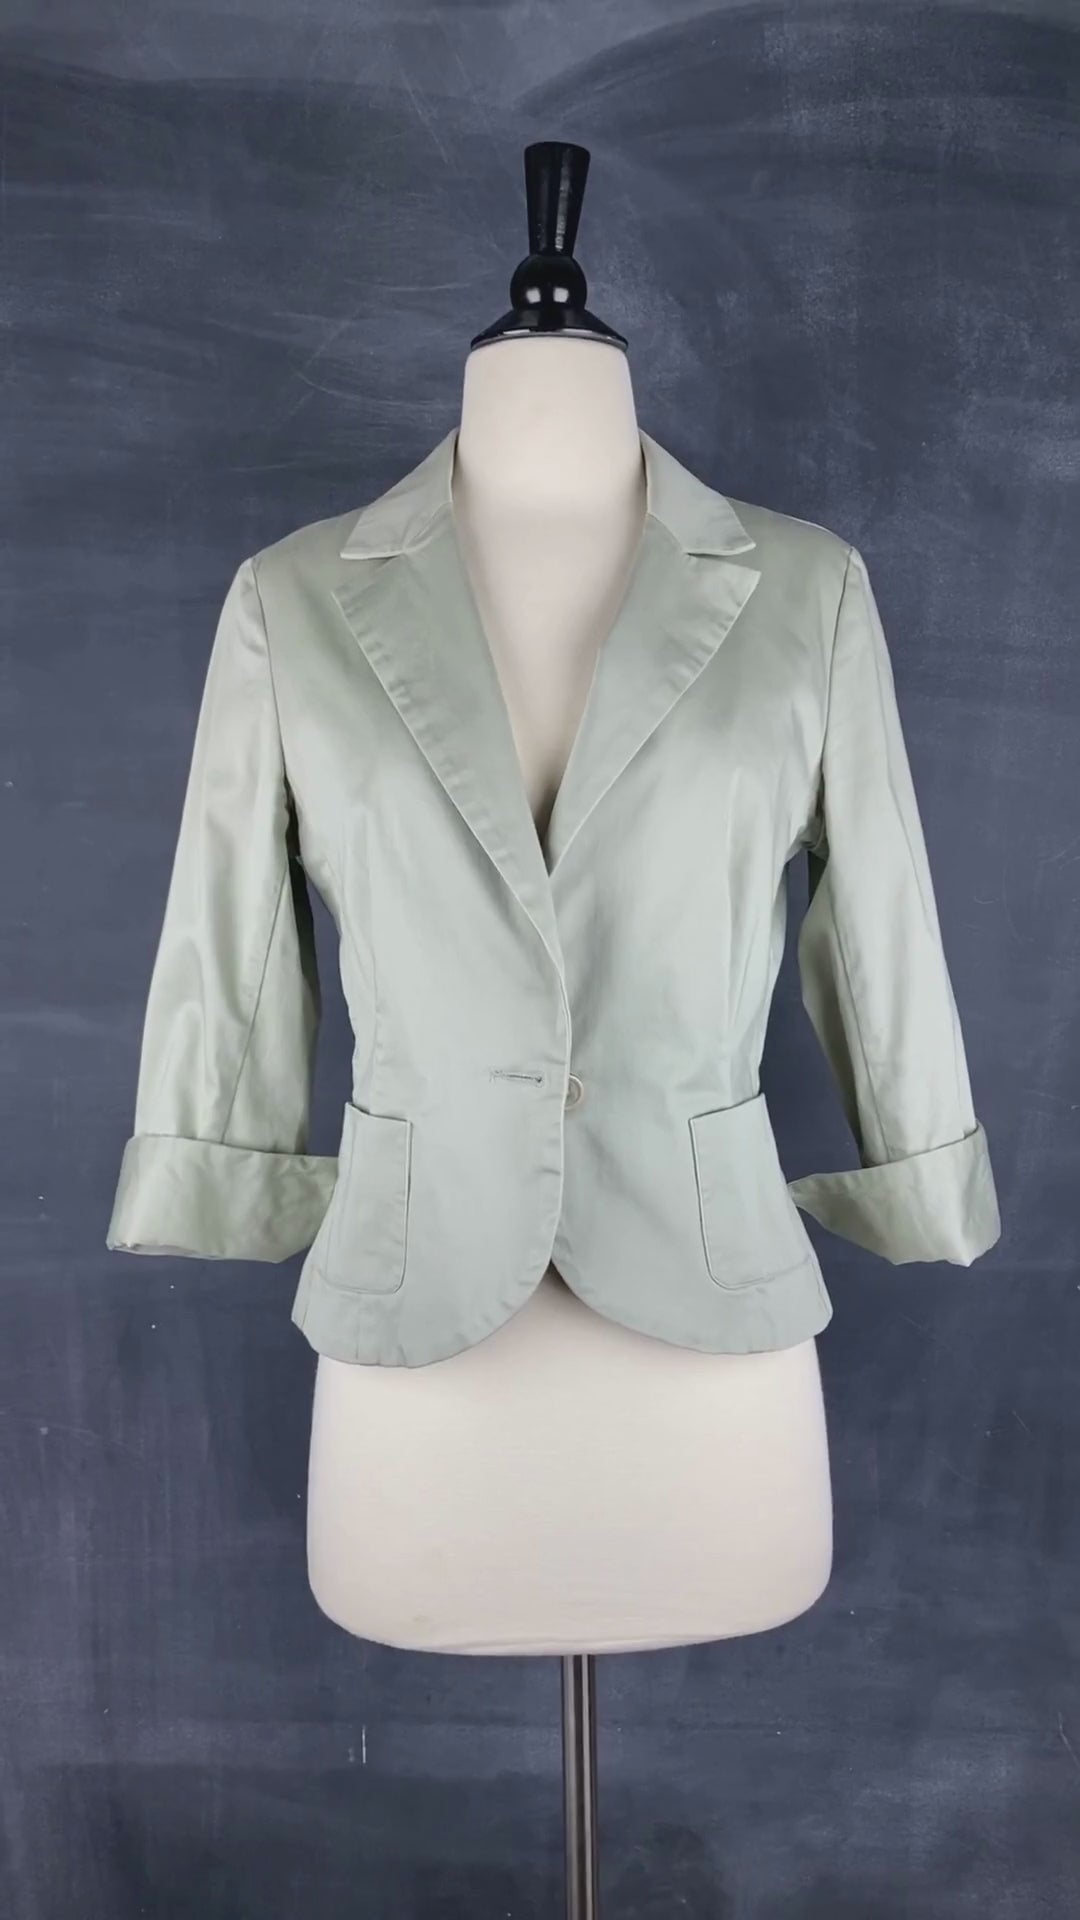 Veston court de couleur sauge, marque Sinéquanone, taille 40 (small-médium). Vue de la vidéo qui présente tous les détails du blazer.